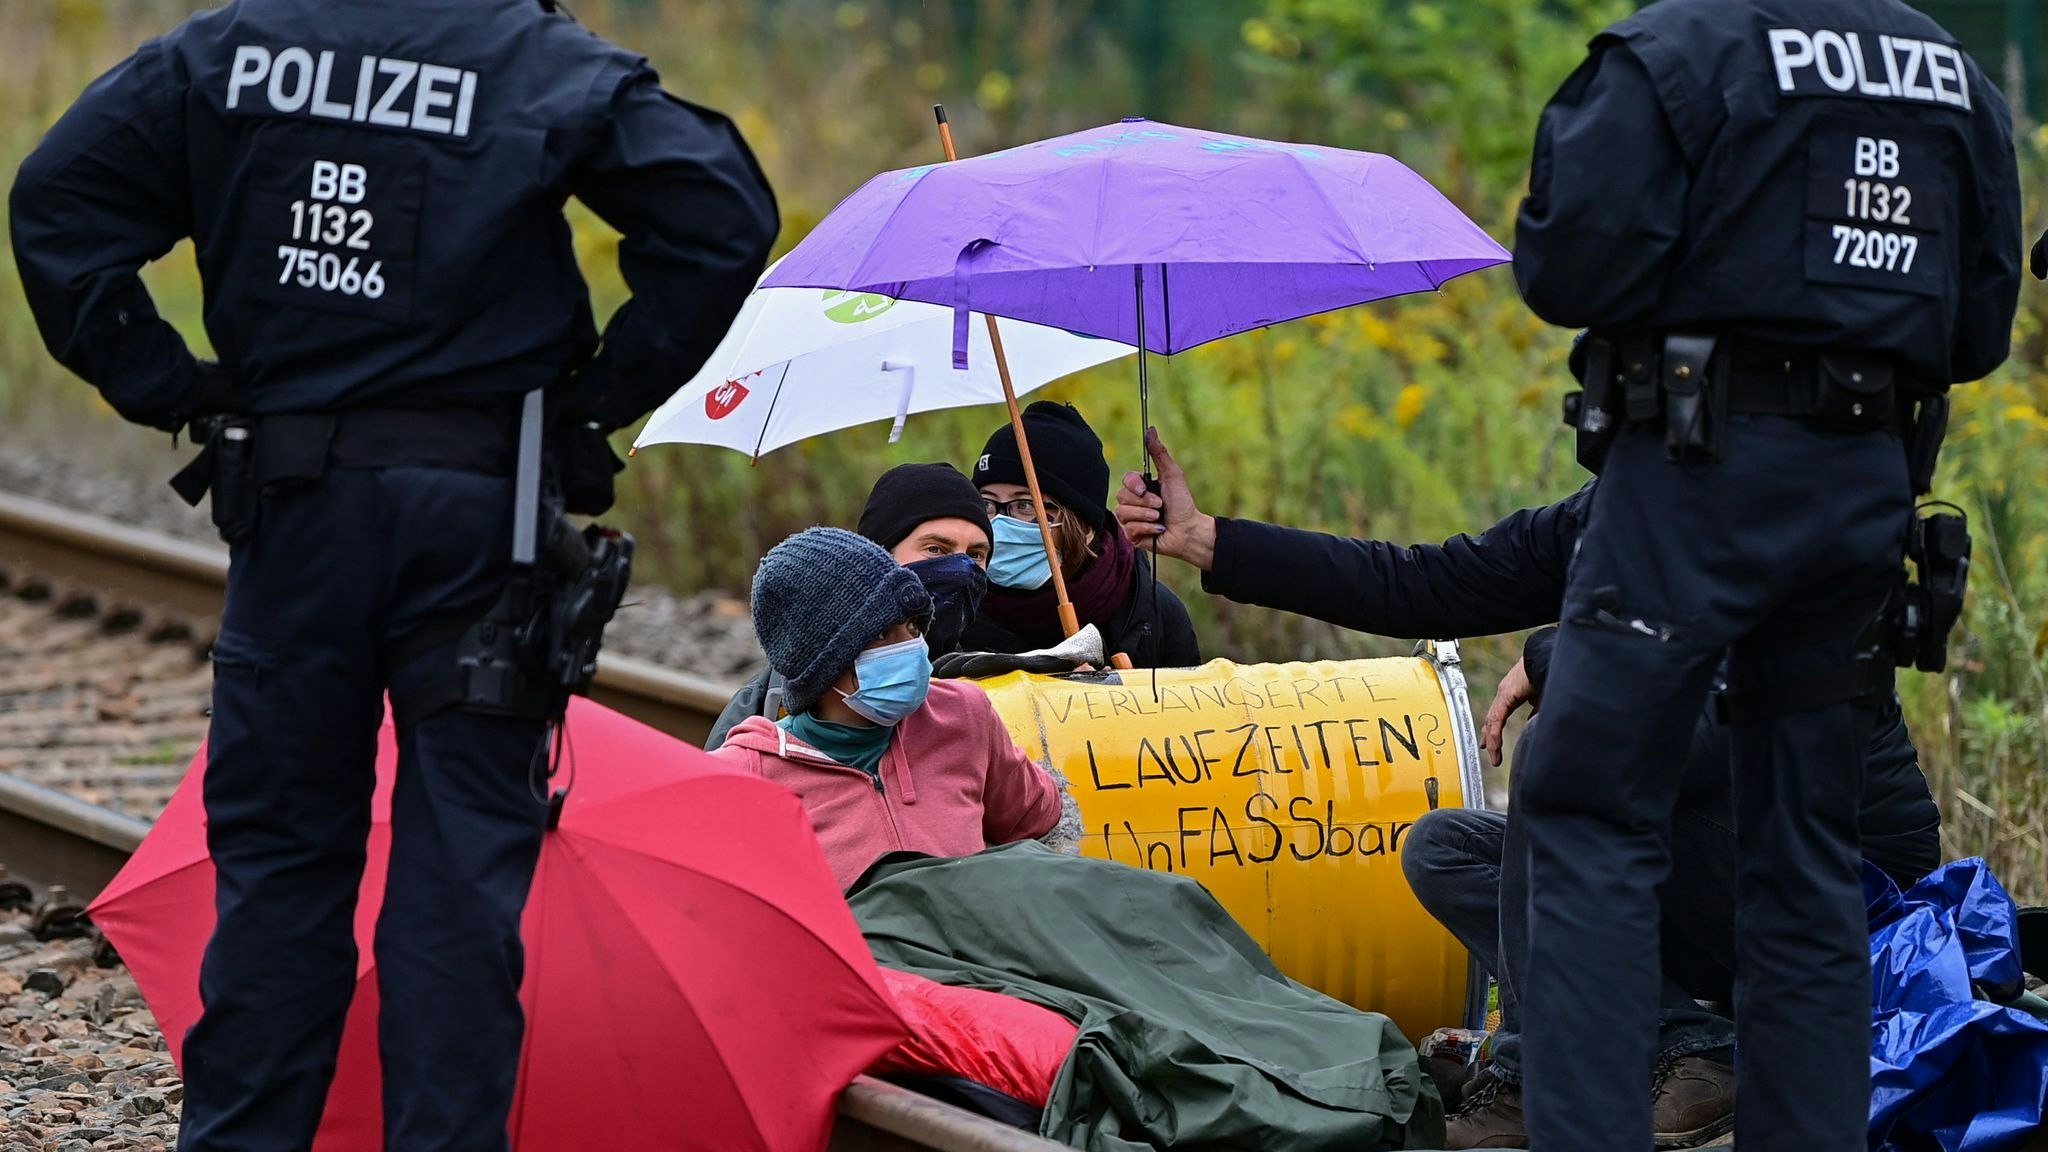 Klimaaktivisten blockieren eine Gleisverbindung für den Transport von Braunkohle zum Kraftwerk Jänschwalde. Foto: dpa/Pleul